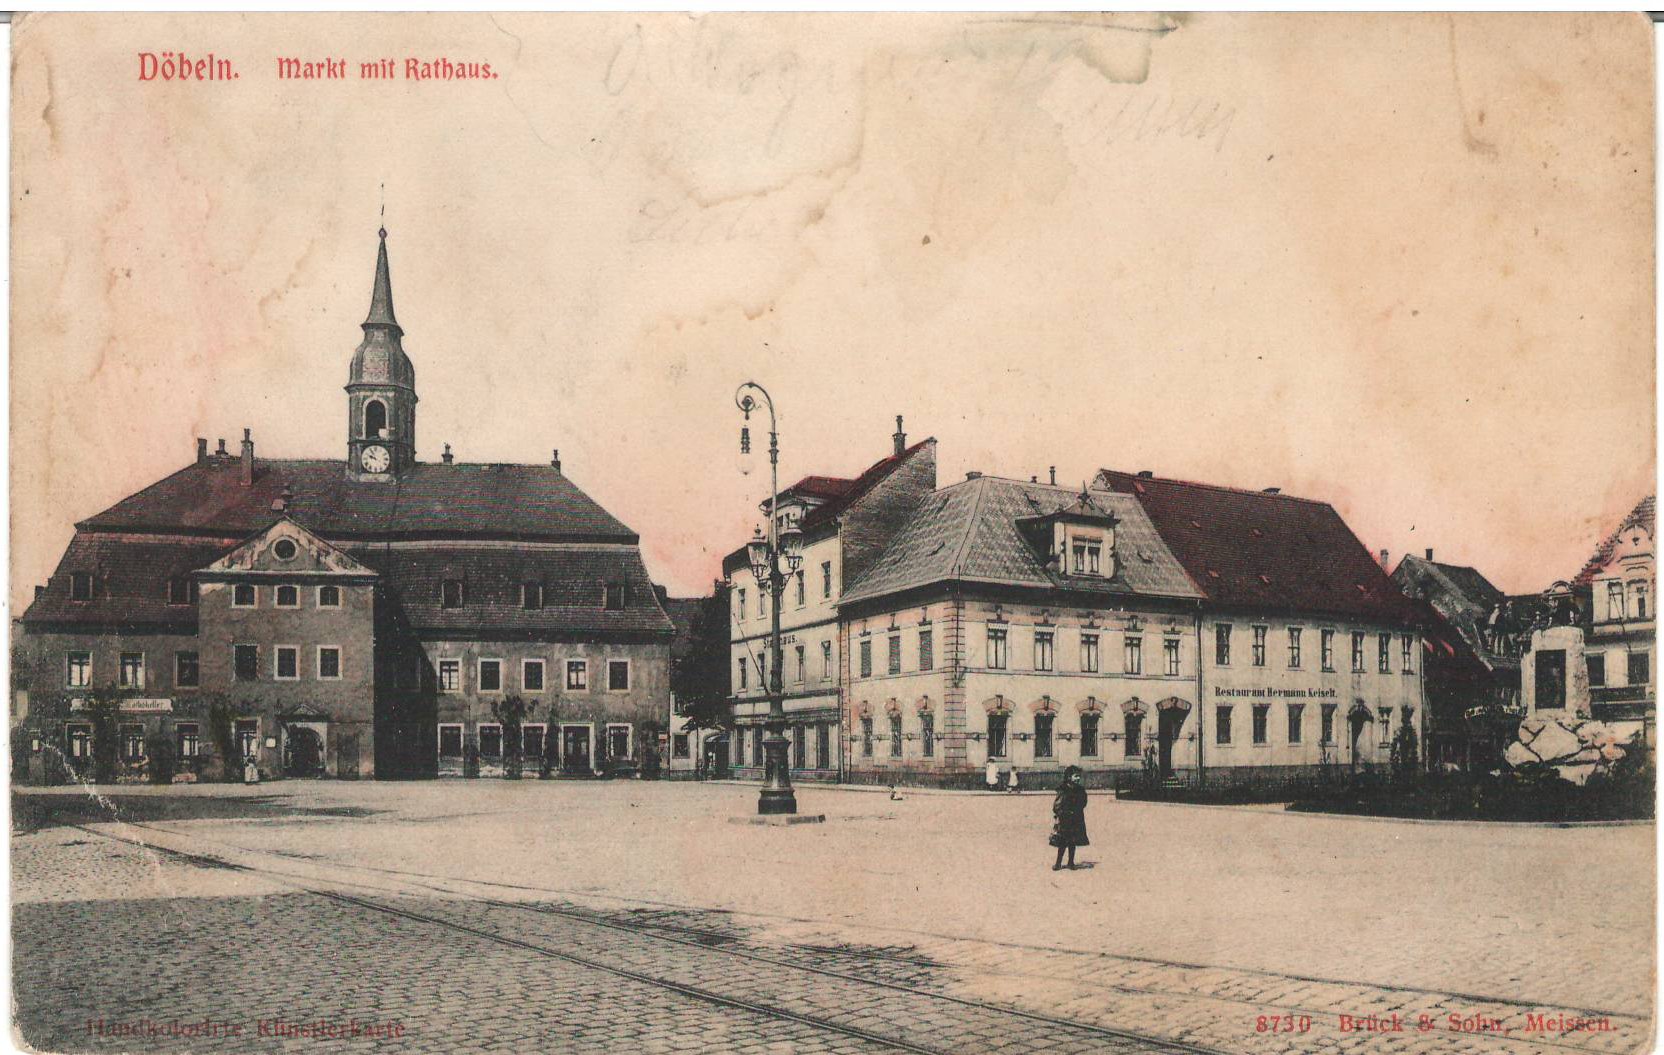 Ansichtspostkarte Döbeln: Markt mit Rathaus (Stadtmuseum / Kleine Galerie Döbeln CC BY-NC-SA)